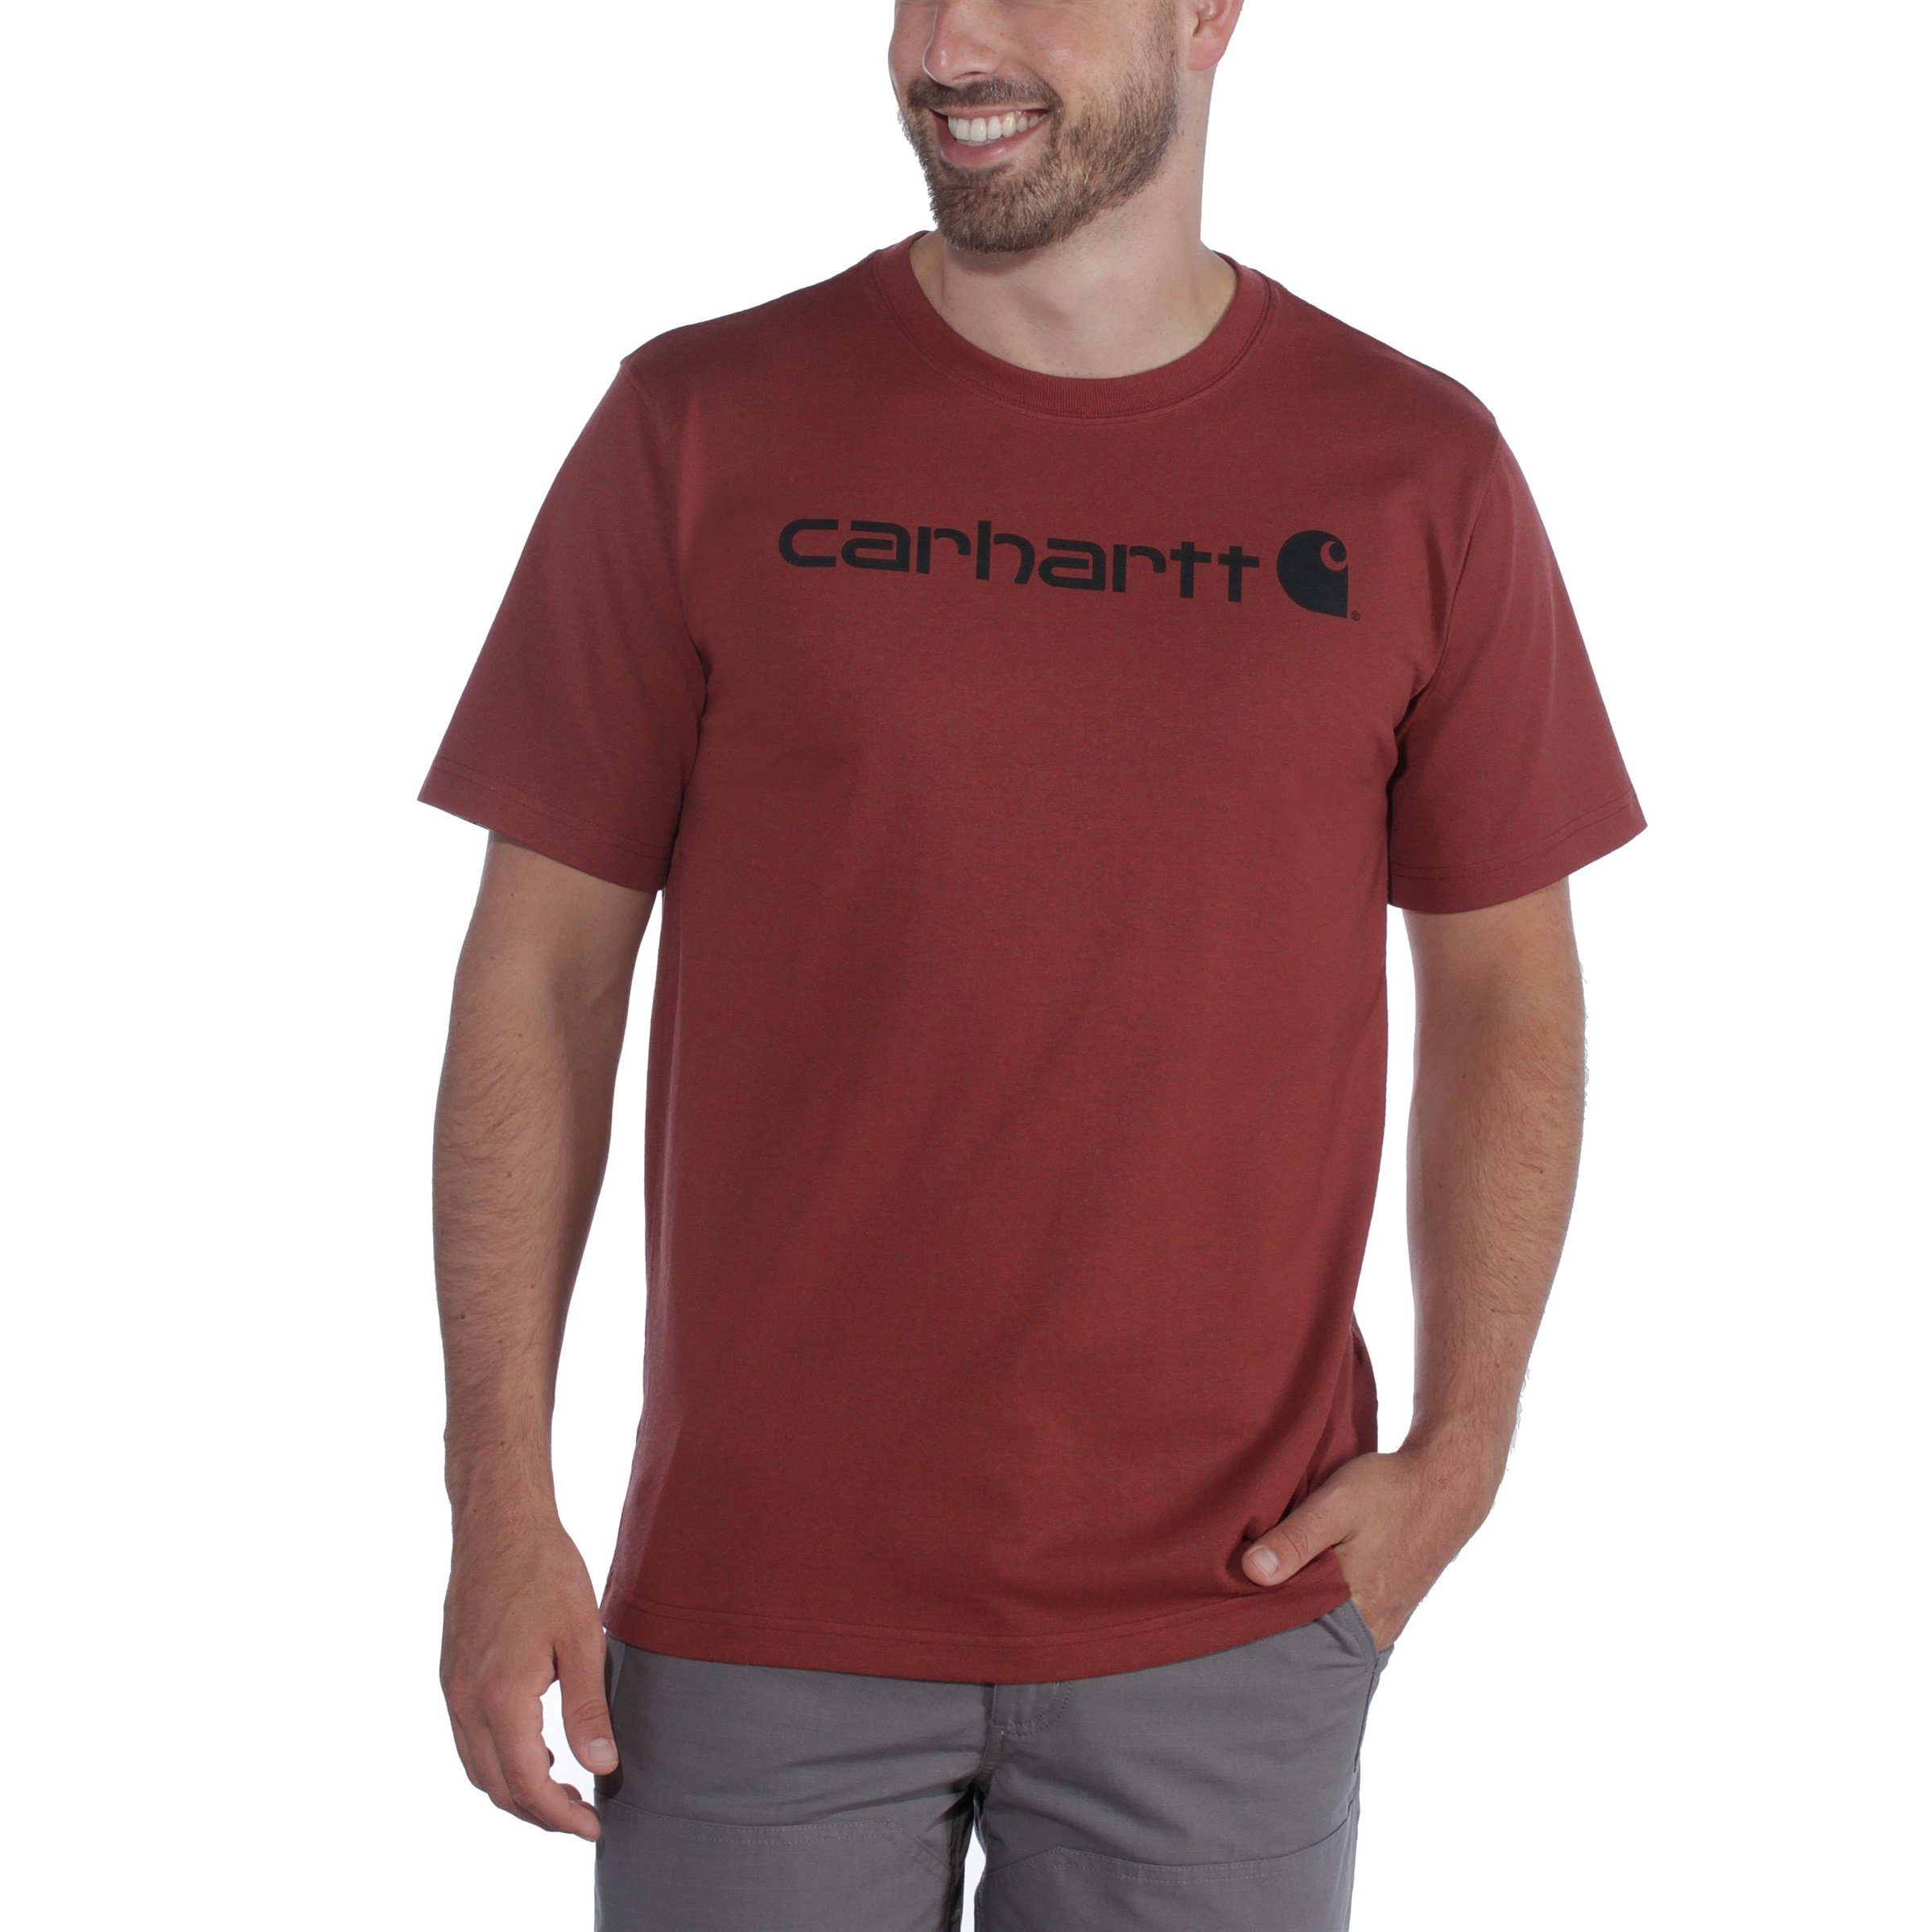 Carhartt T-Shirt Carhartt Short-Sleeve Graphic coastal Adult Relaxed Fit Heavyweight T-Shirt heather Logo Herren